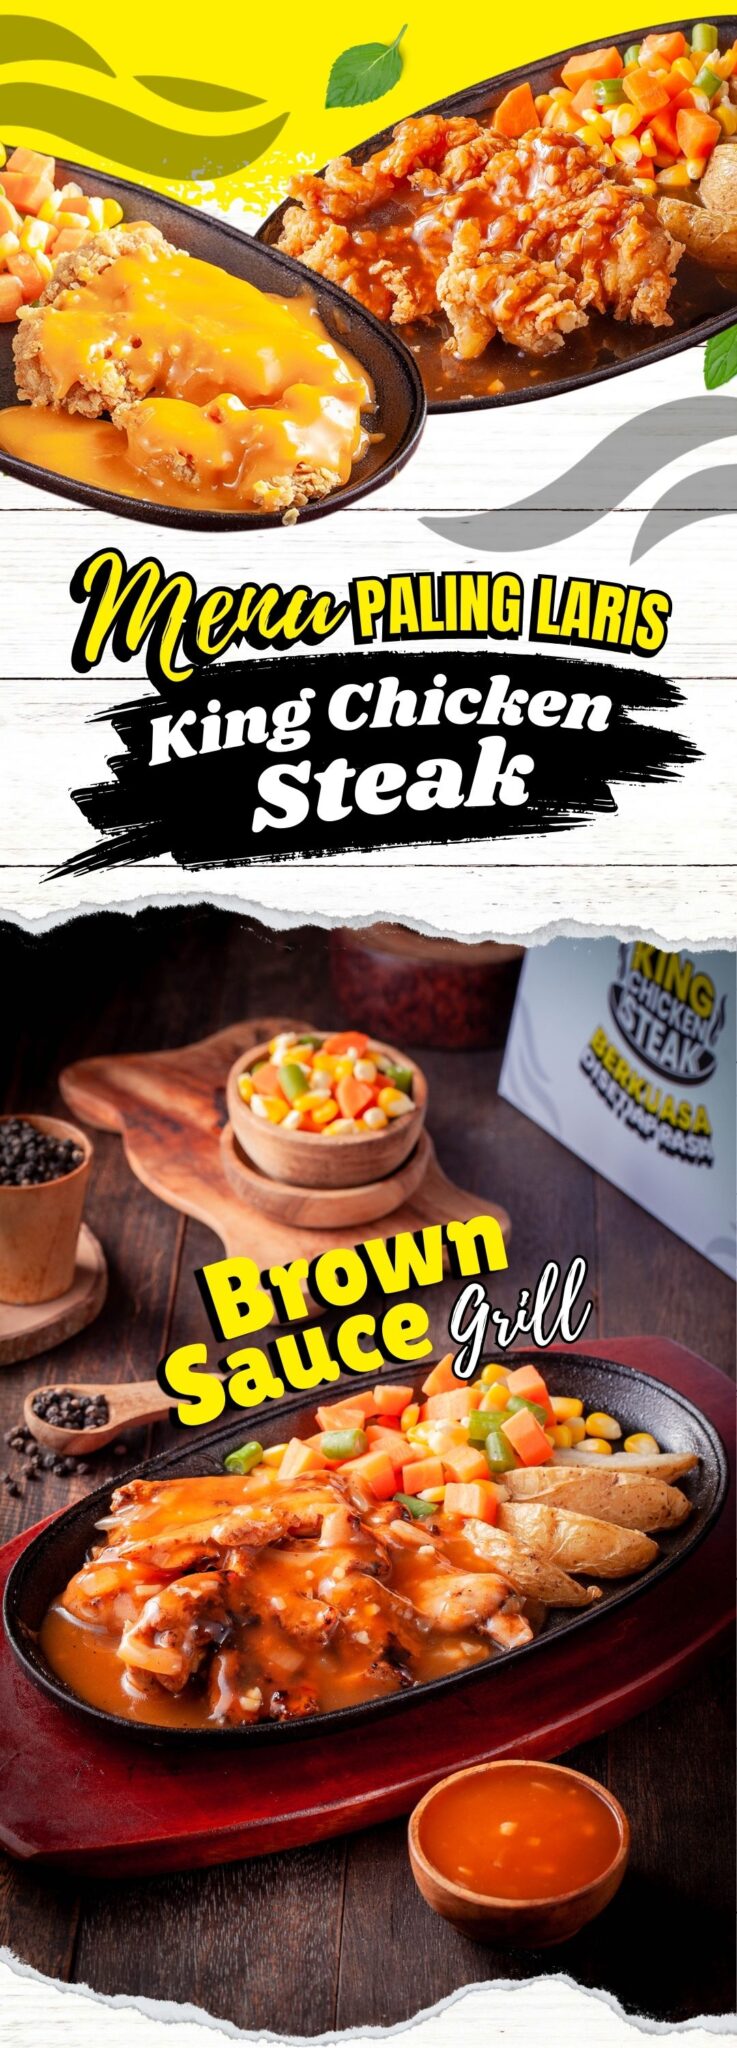 Paket Kemitraan King Chicken Steak